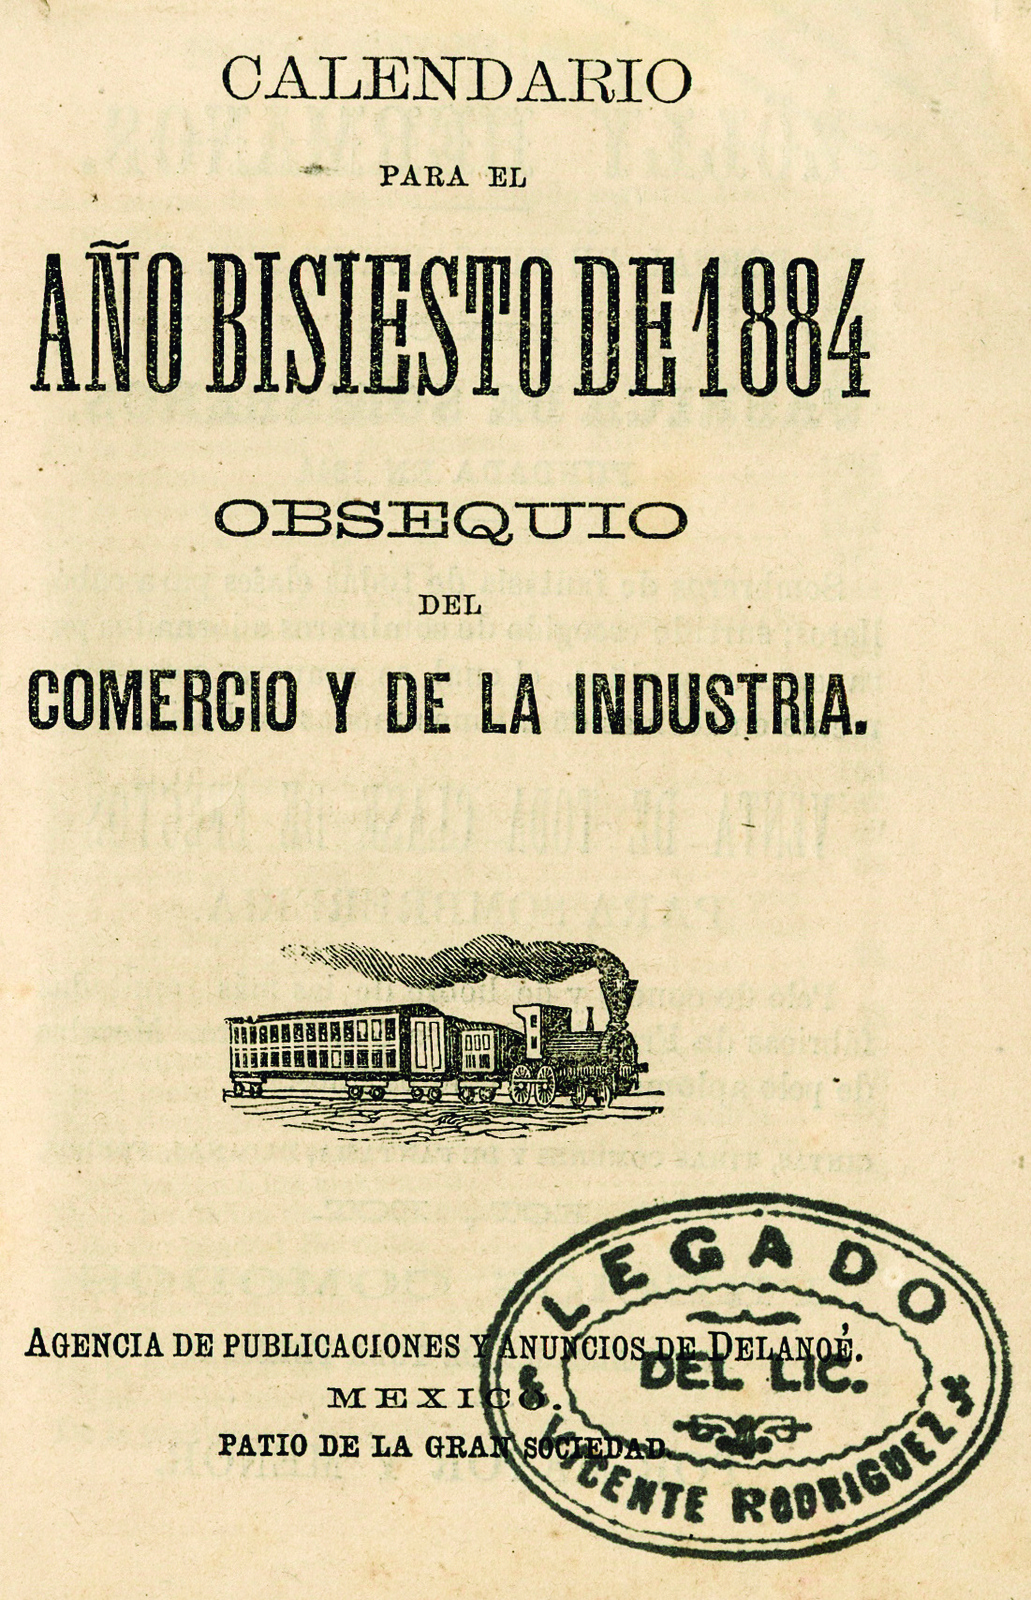 Calendario para el año bisiesto de 1884 obsequio del Comercio y de la Industria.